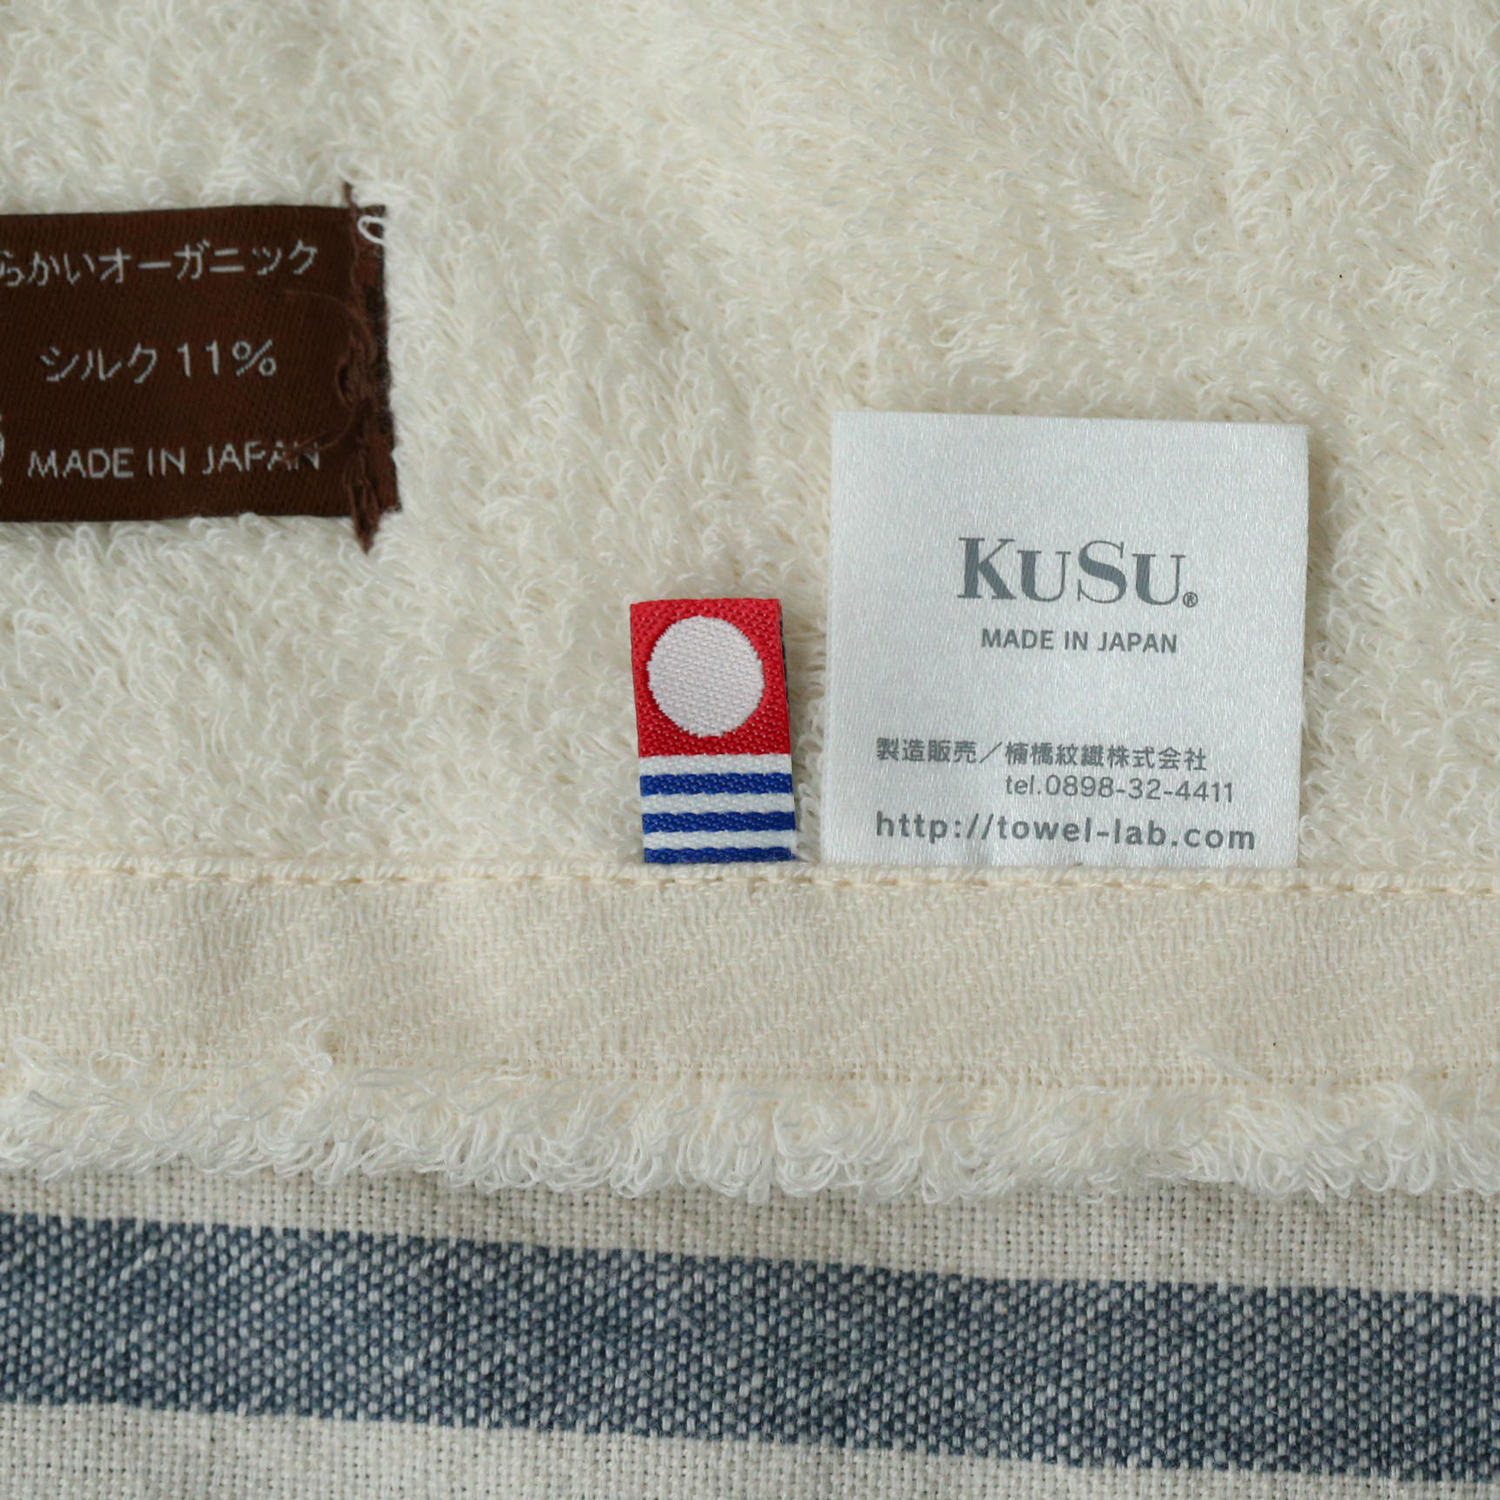 KuSu/ピュアオーガニックタオル for Ladies バスタオル スタンダードサイズ